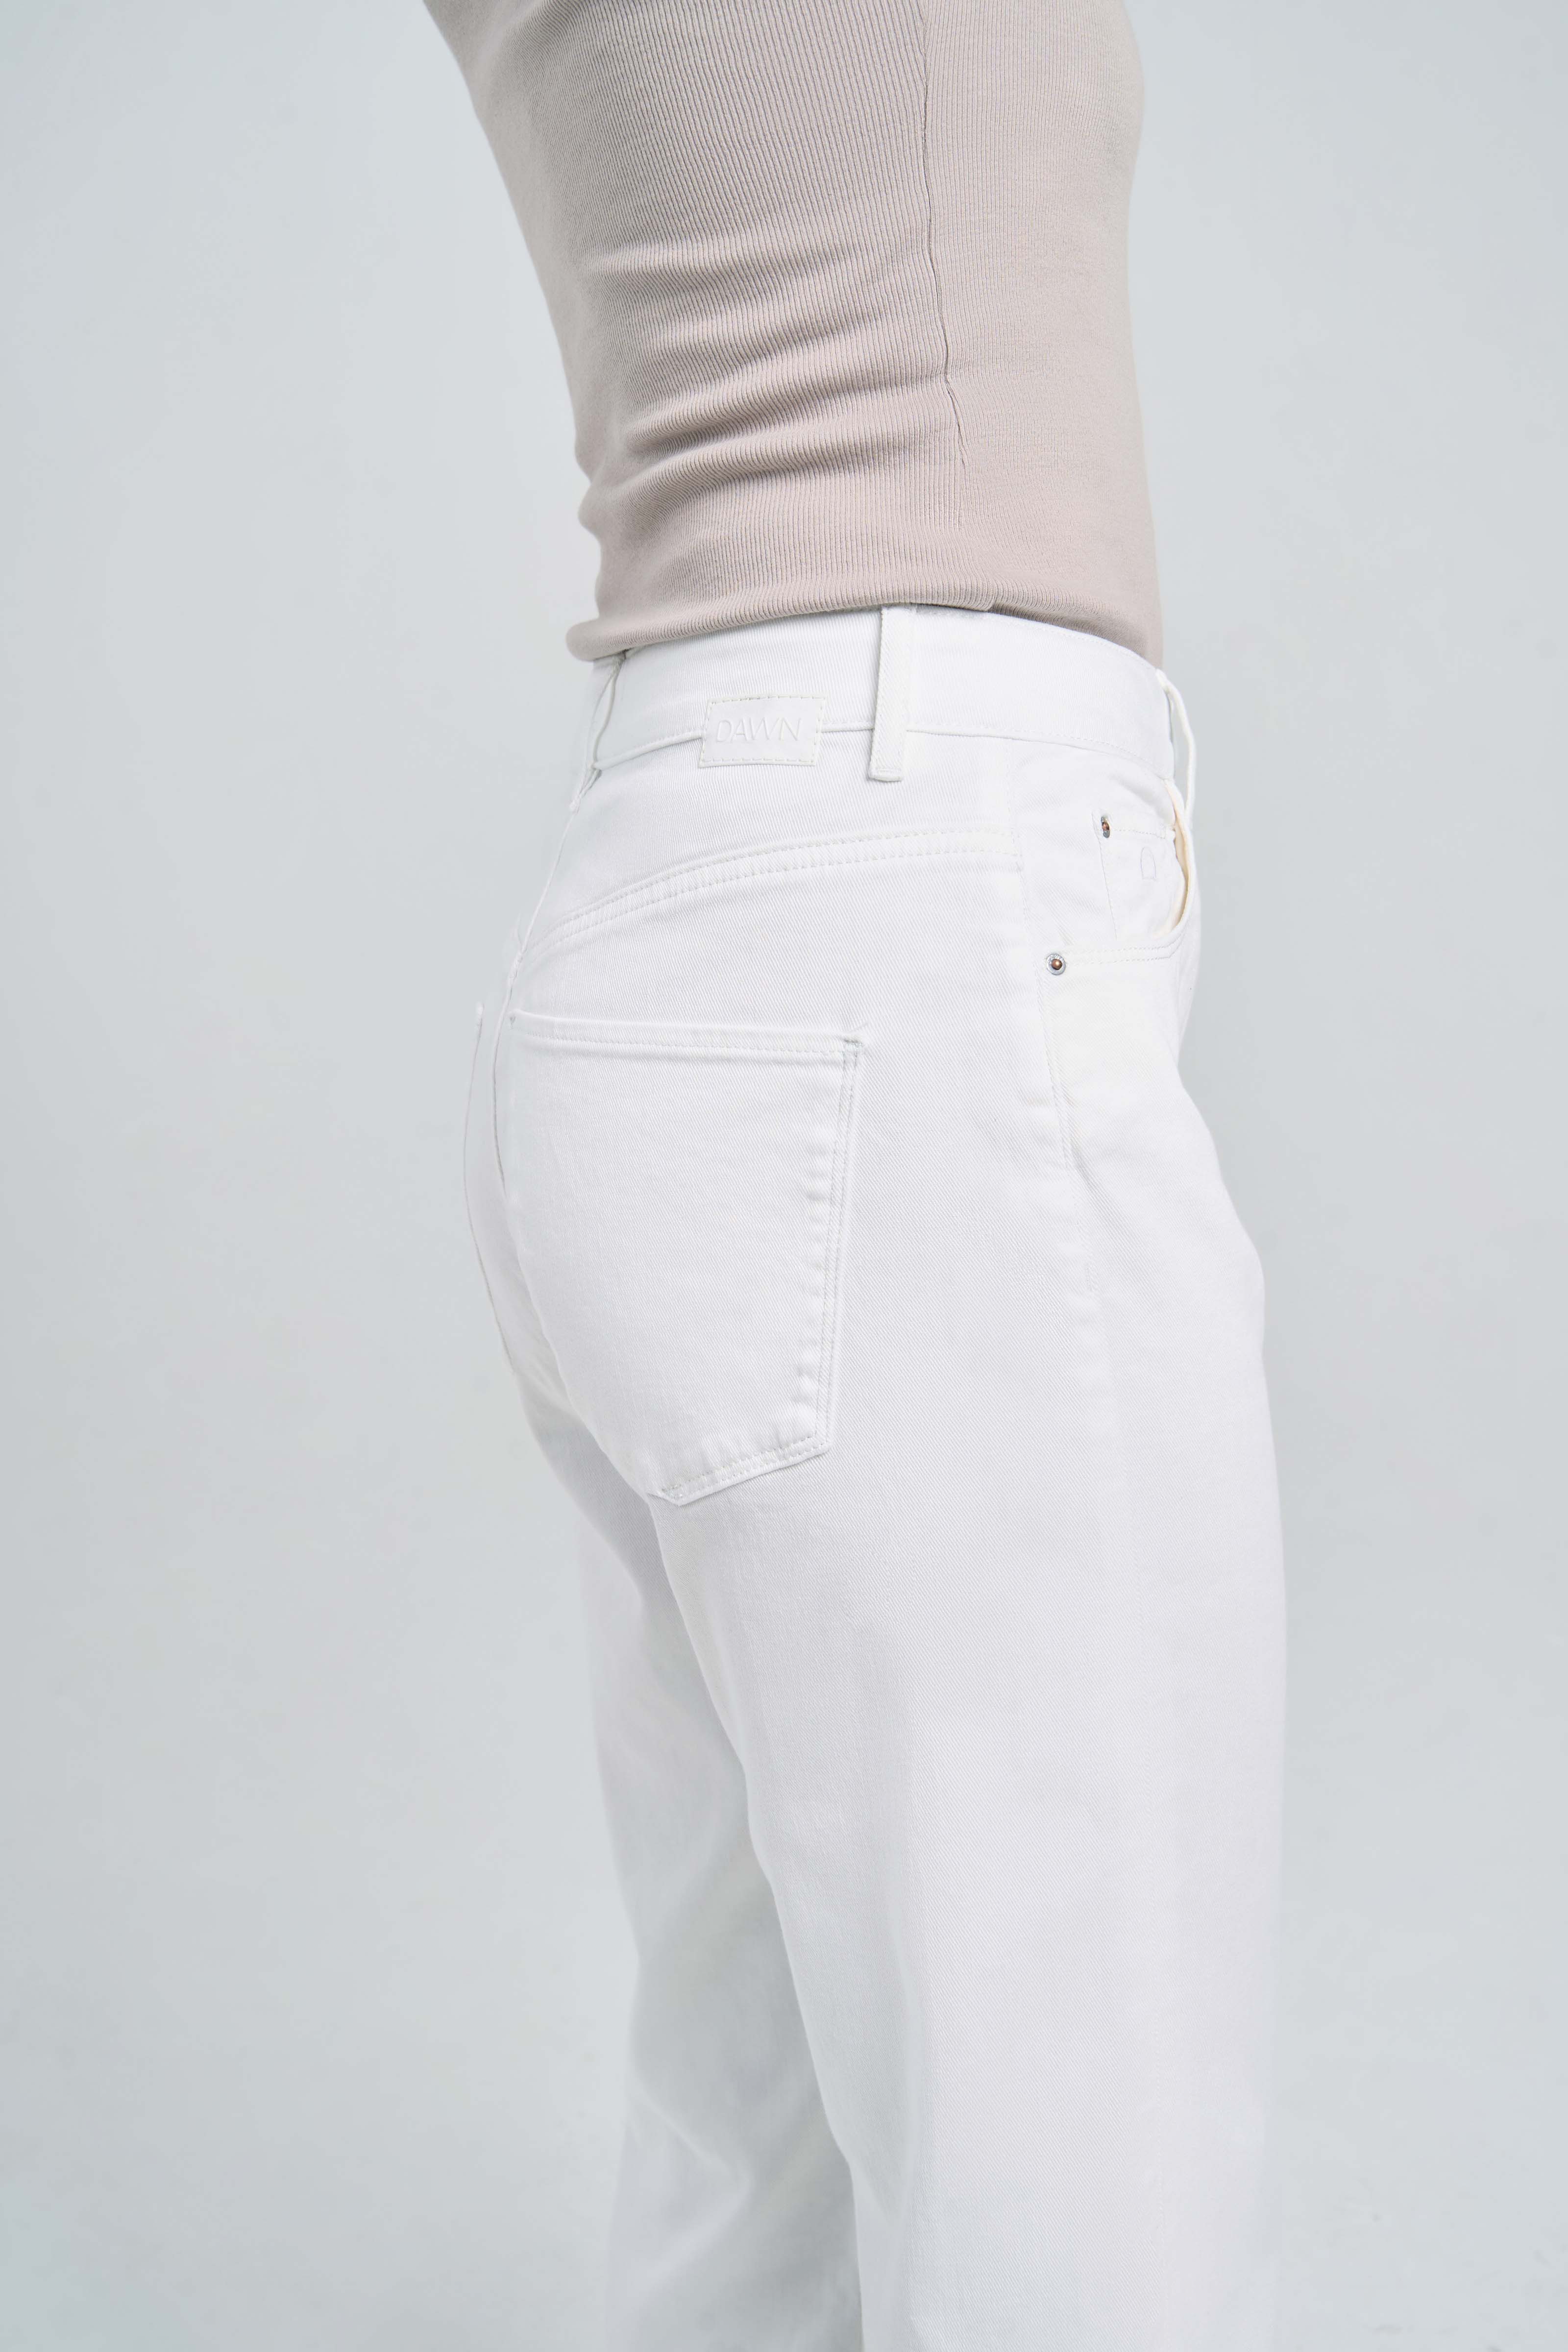 Jeans white Denim - Dawn